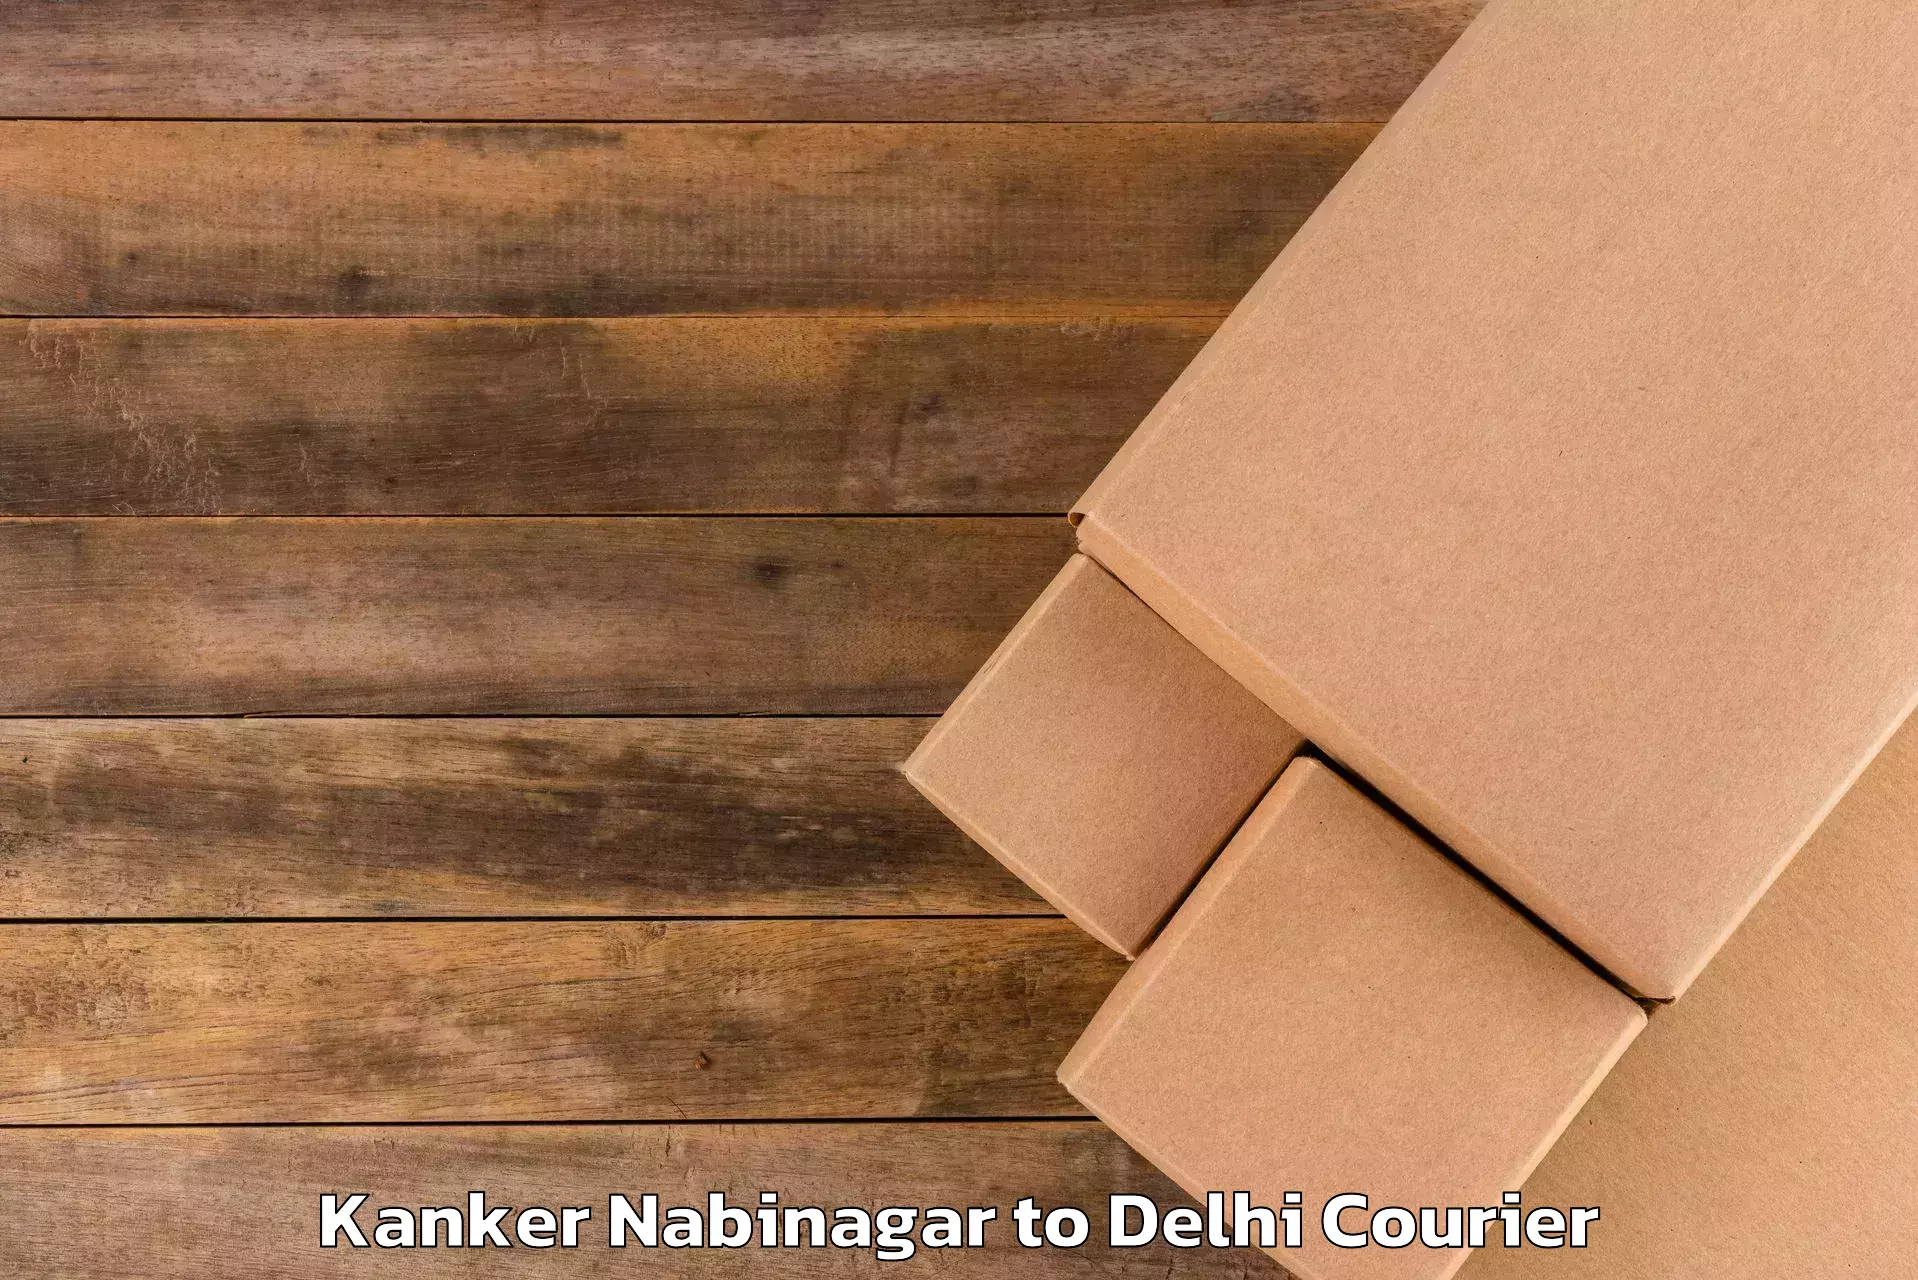 Baggage transport management Kanker Nabinagar to Delhi